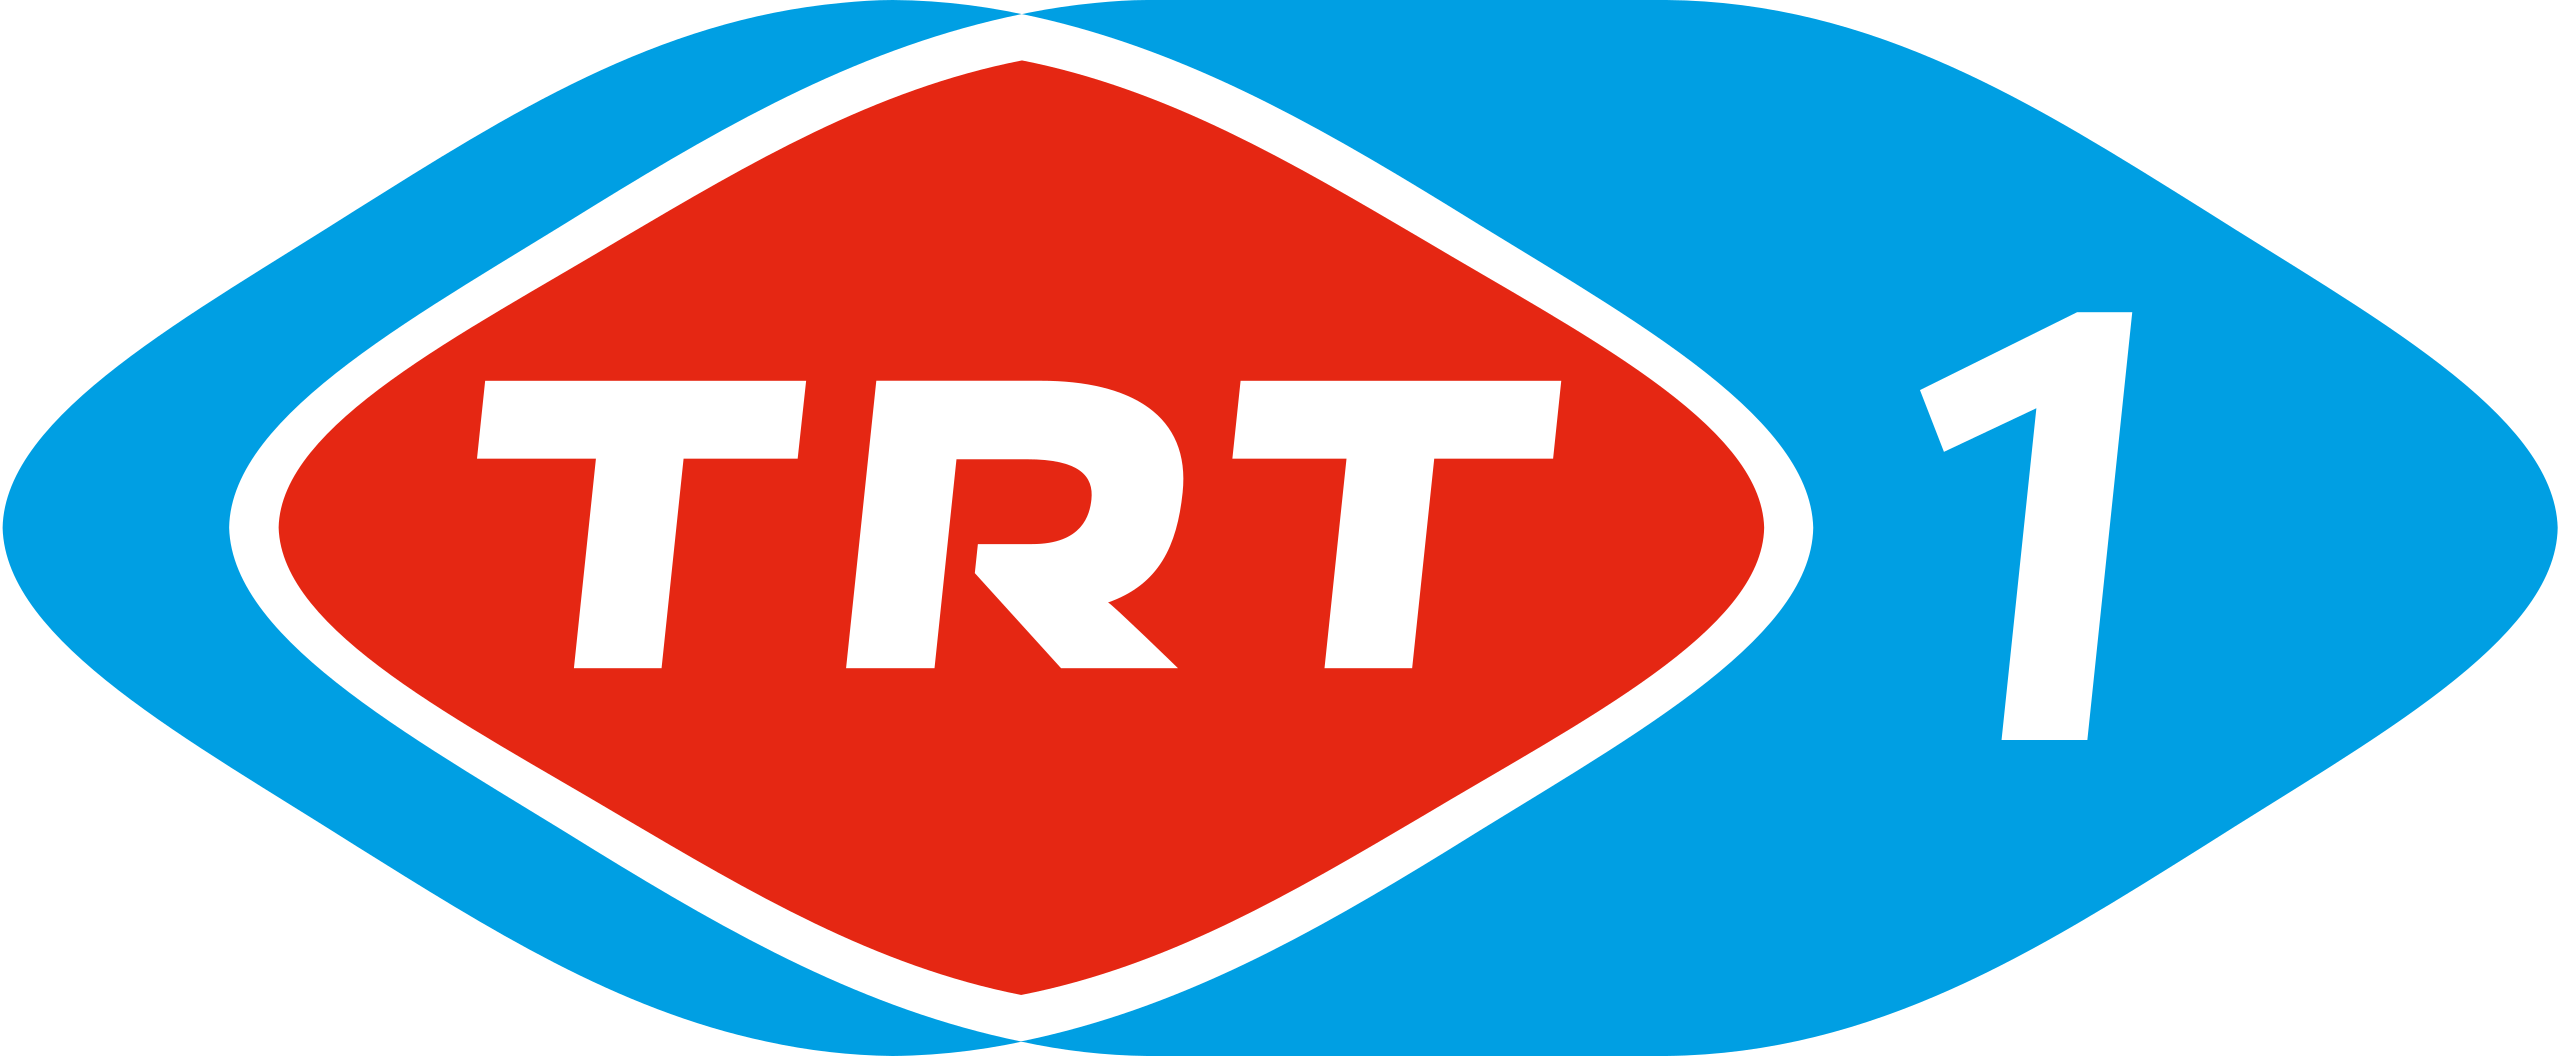 Trt canlı yayın. TRT логотип. Логотип канала TRT 1 HD. Турецкий канал ТРТ. Логотип телеканала TRT Avaz.